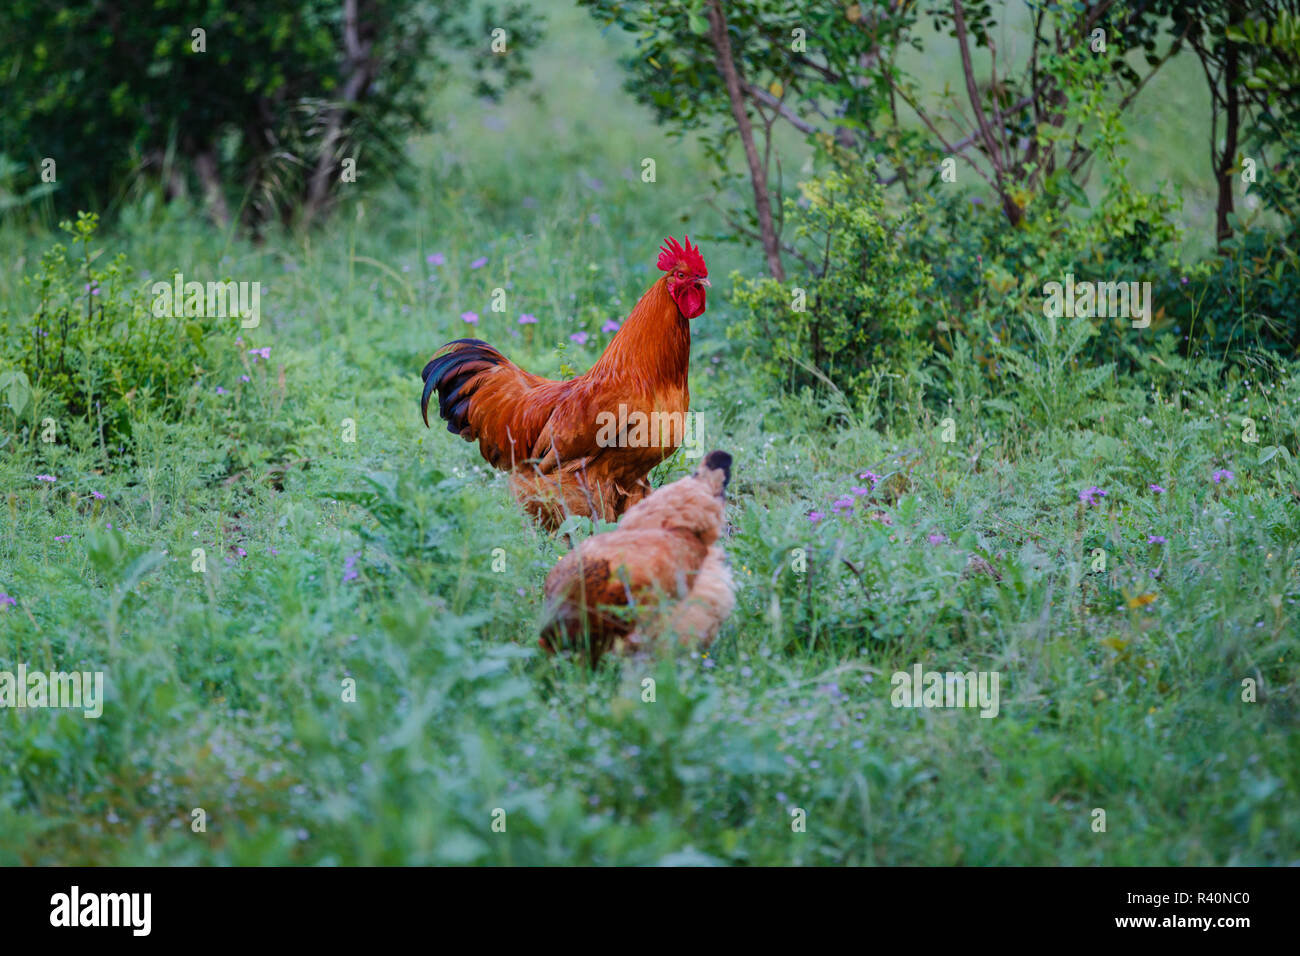 Hühner (Gallus gallus) Ernährung im begrünten Hinterhof Stockfoto